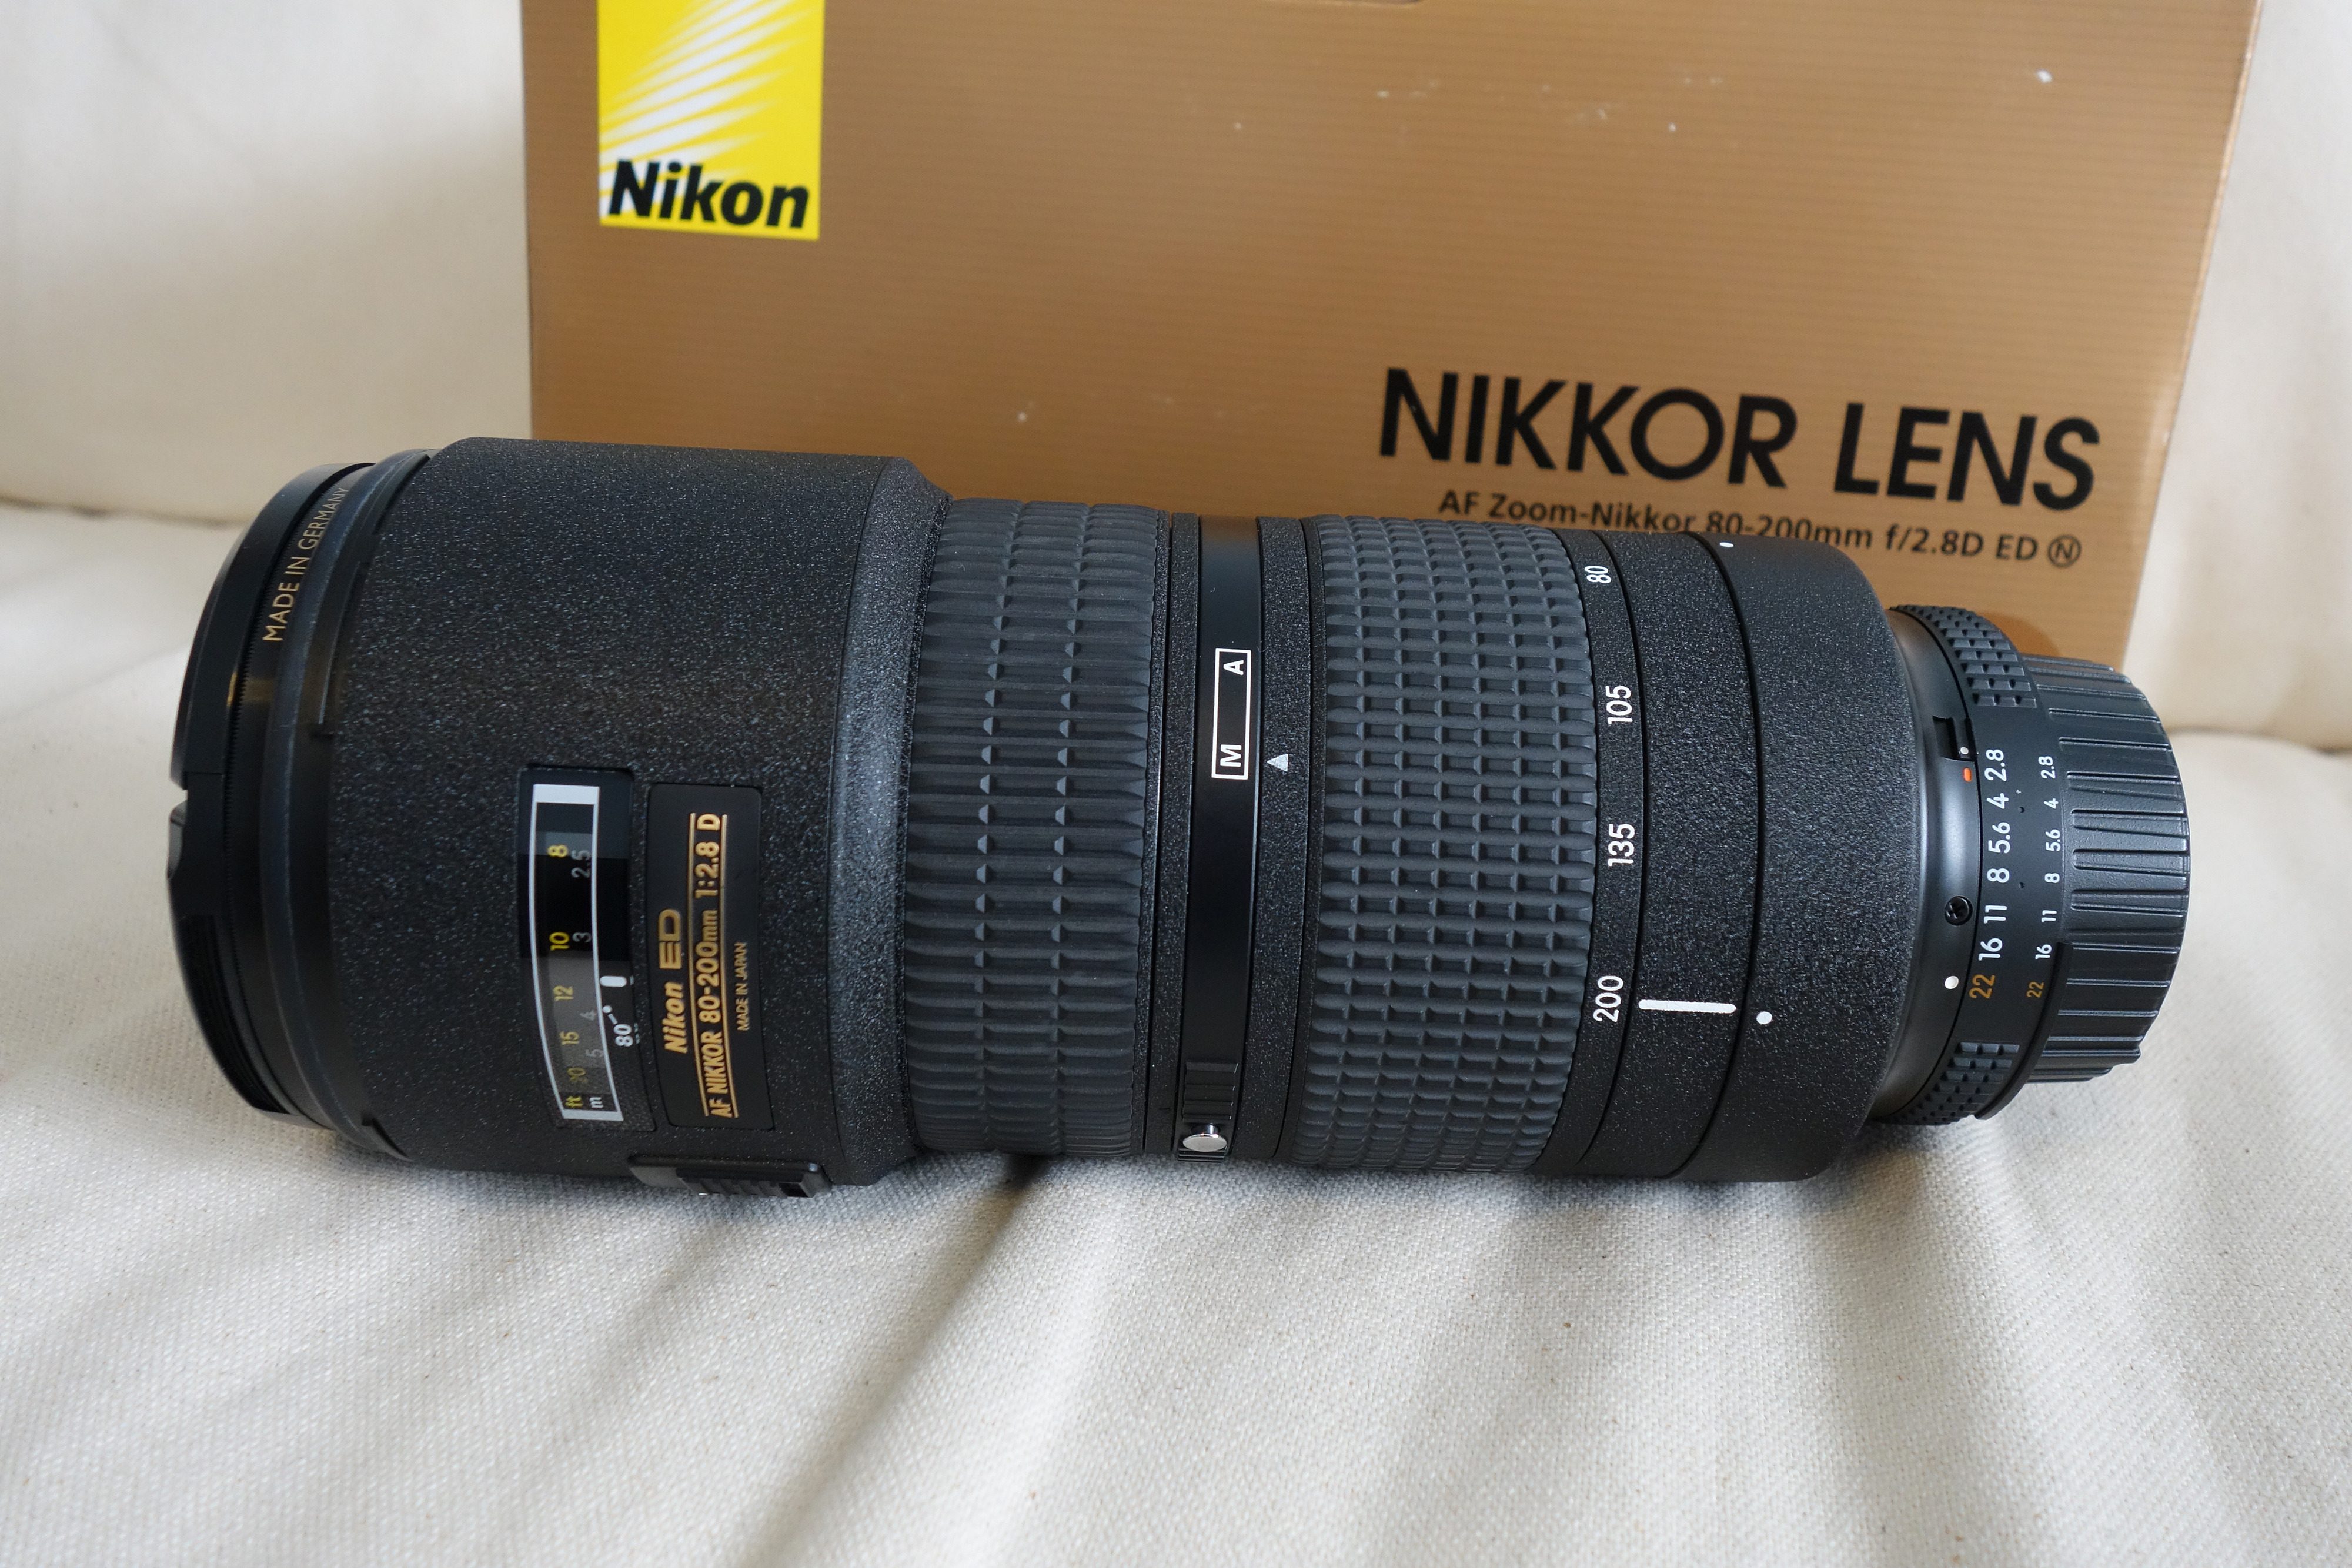  Nikon AF Zoom Nikkor 80-200mm f/2.8D ED (small steel gun)